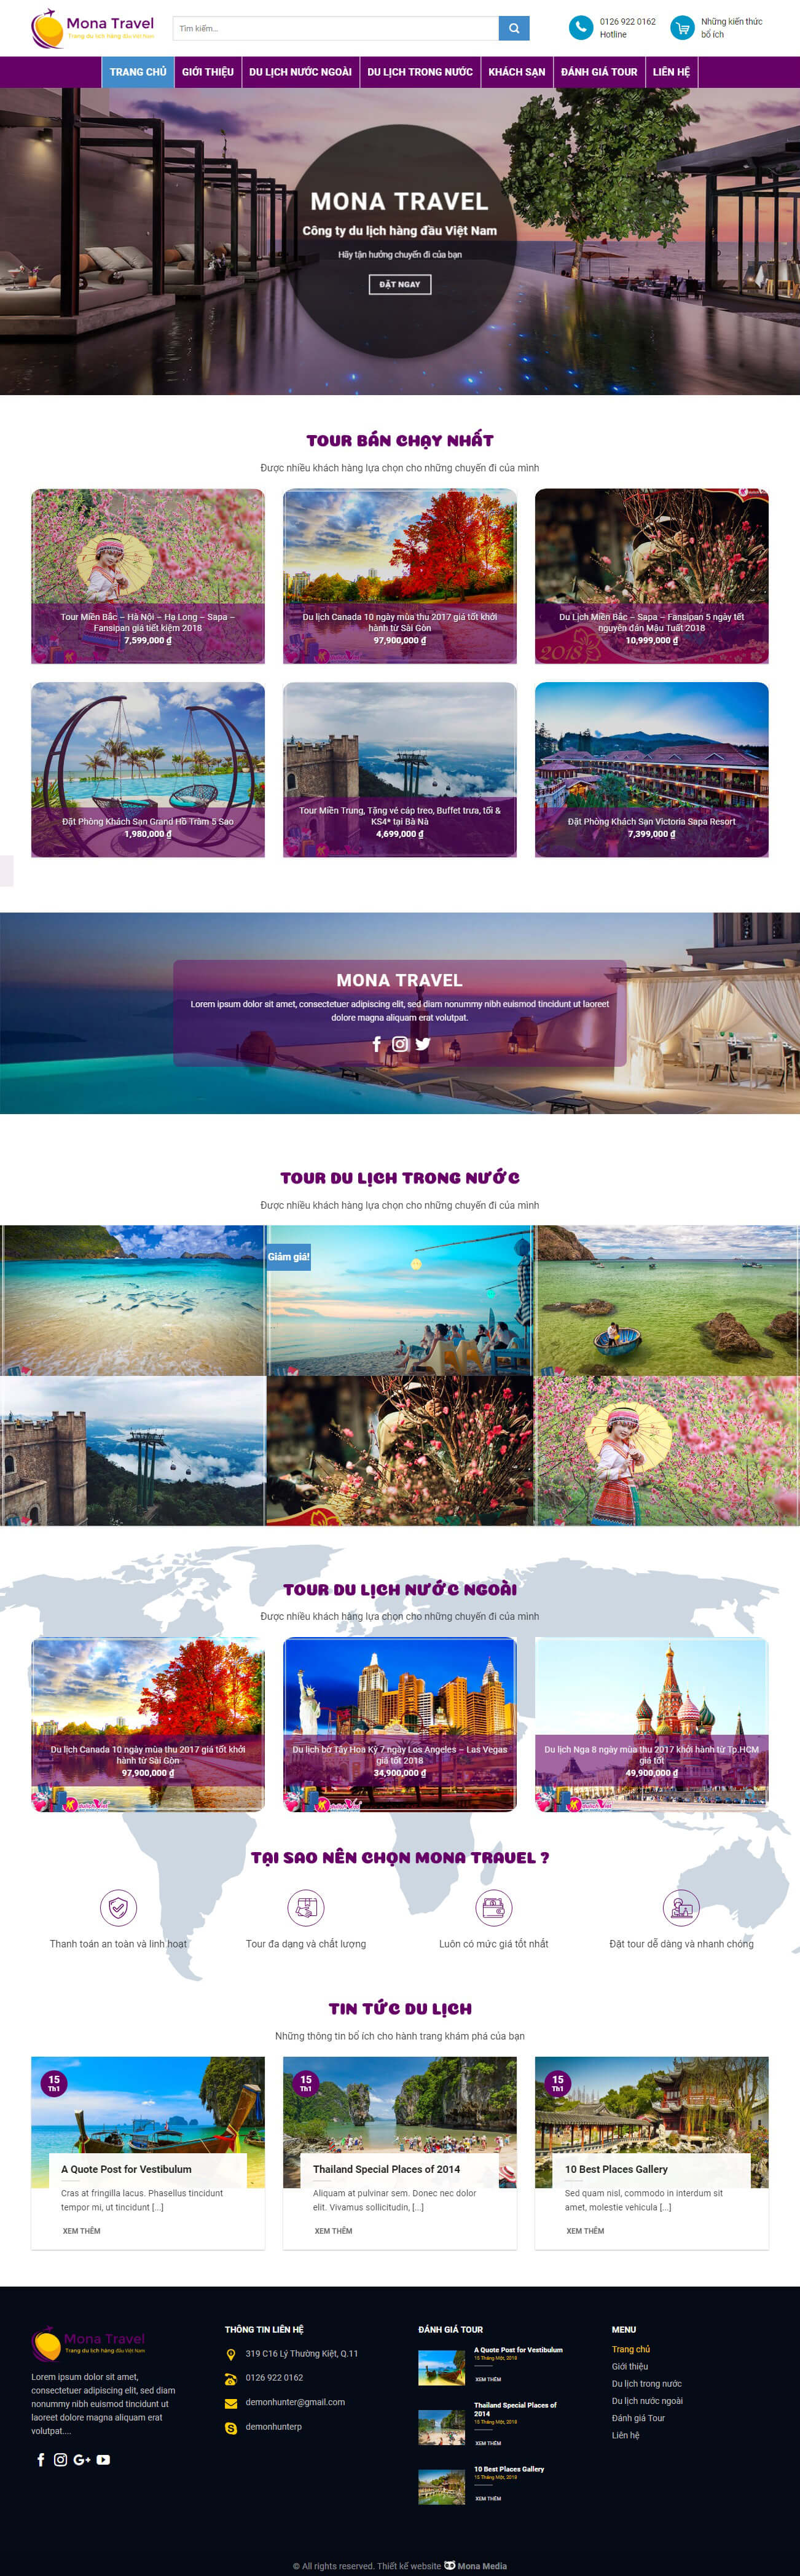 Mẫu website cung cấp chuyến du lịch tương tự Tugo